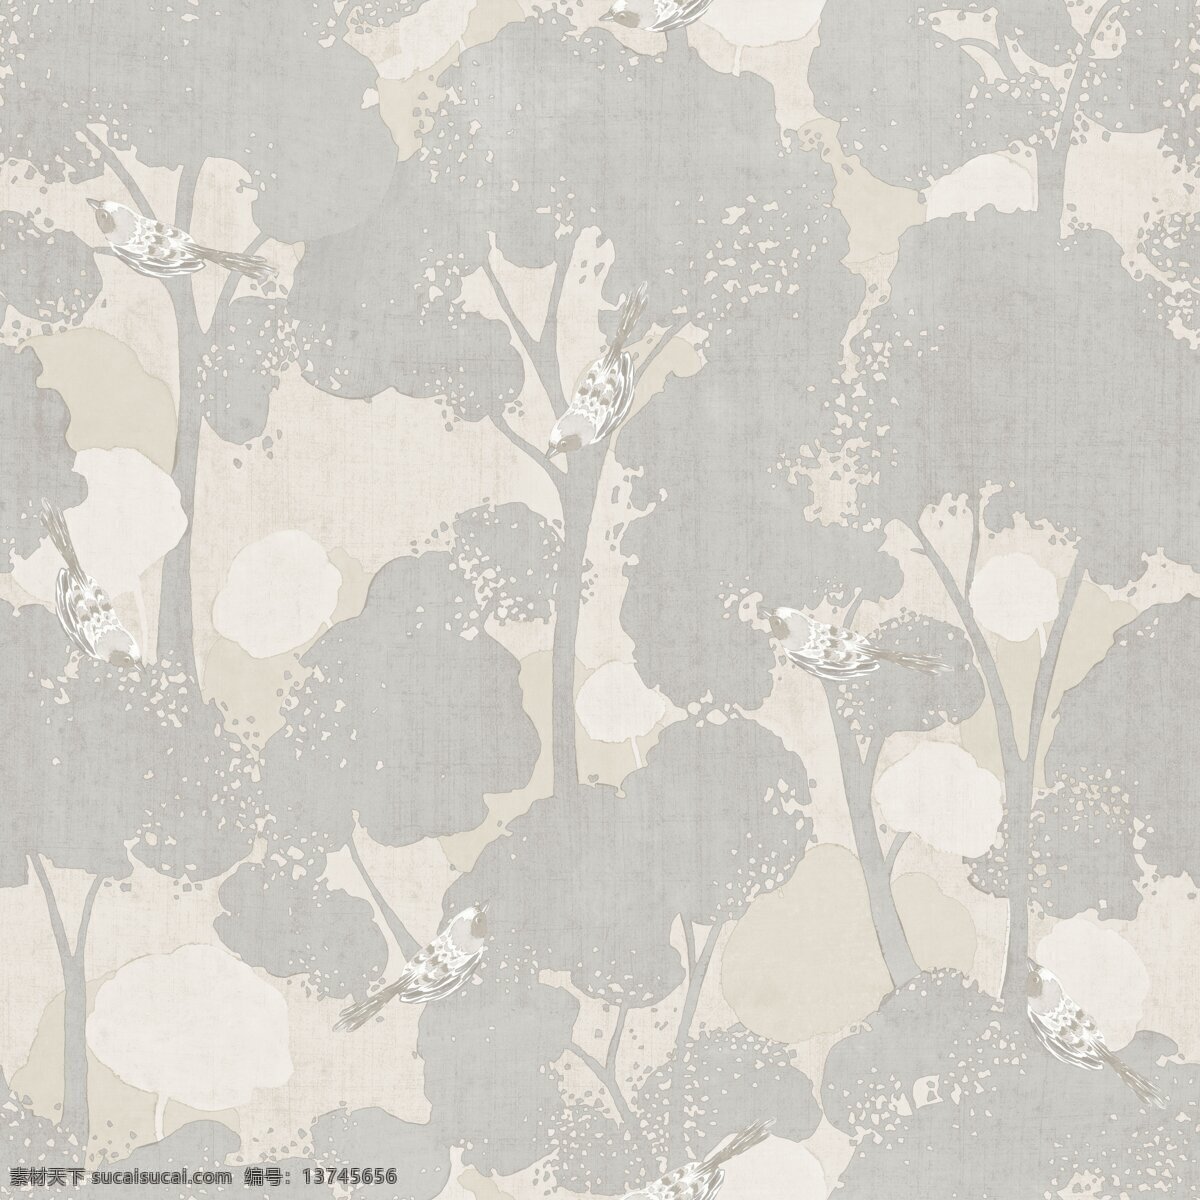 清新 风格 灰色 树枝 壁纸 图案 壁纸图案 灰色树枝 浅褐色底纹 植物元素 自然元素